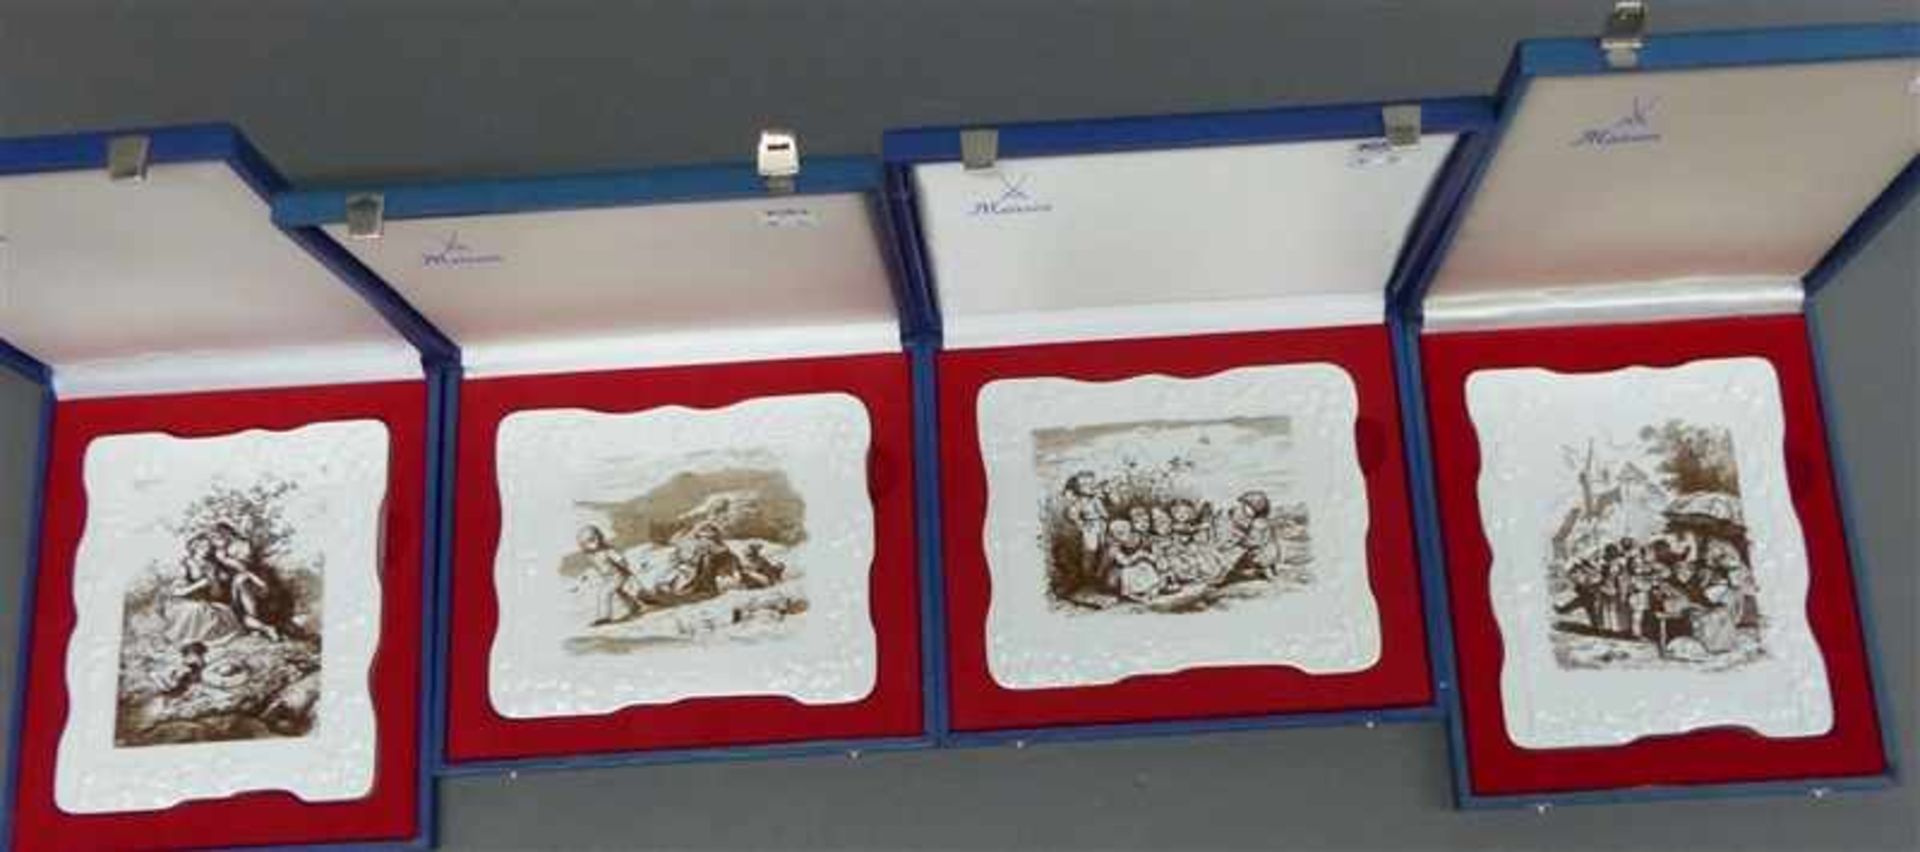 4 Porzellanplakettenbemalt mit Motiven von Ludwig Richter, limitierte Auflage von 1980, zweimal